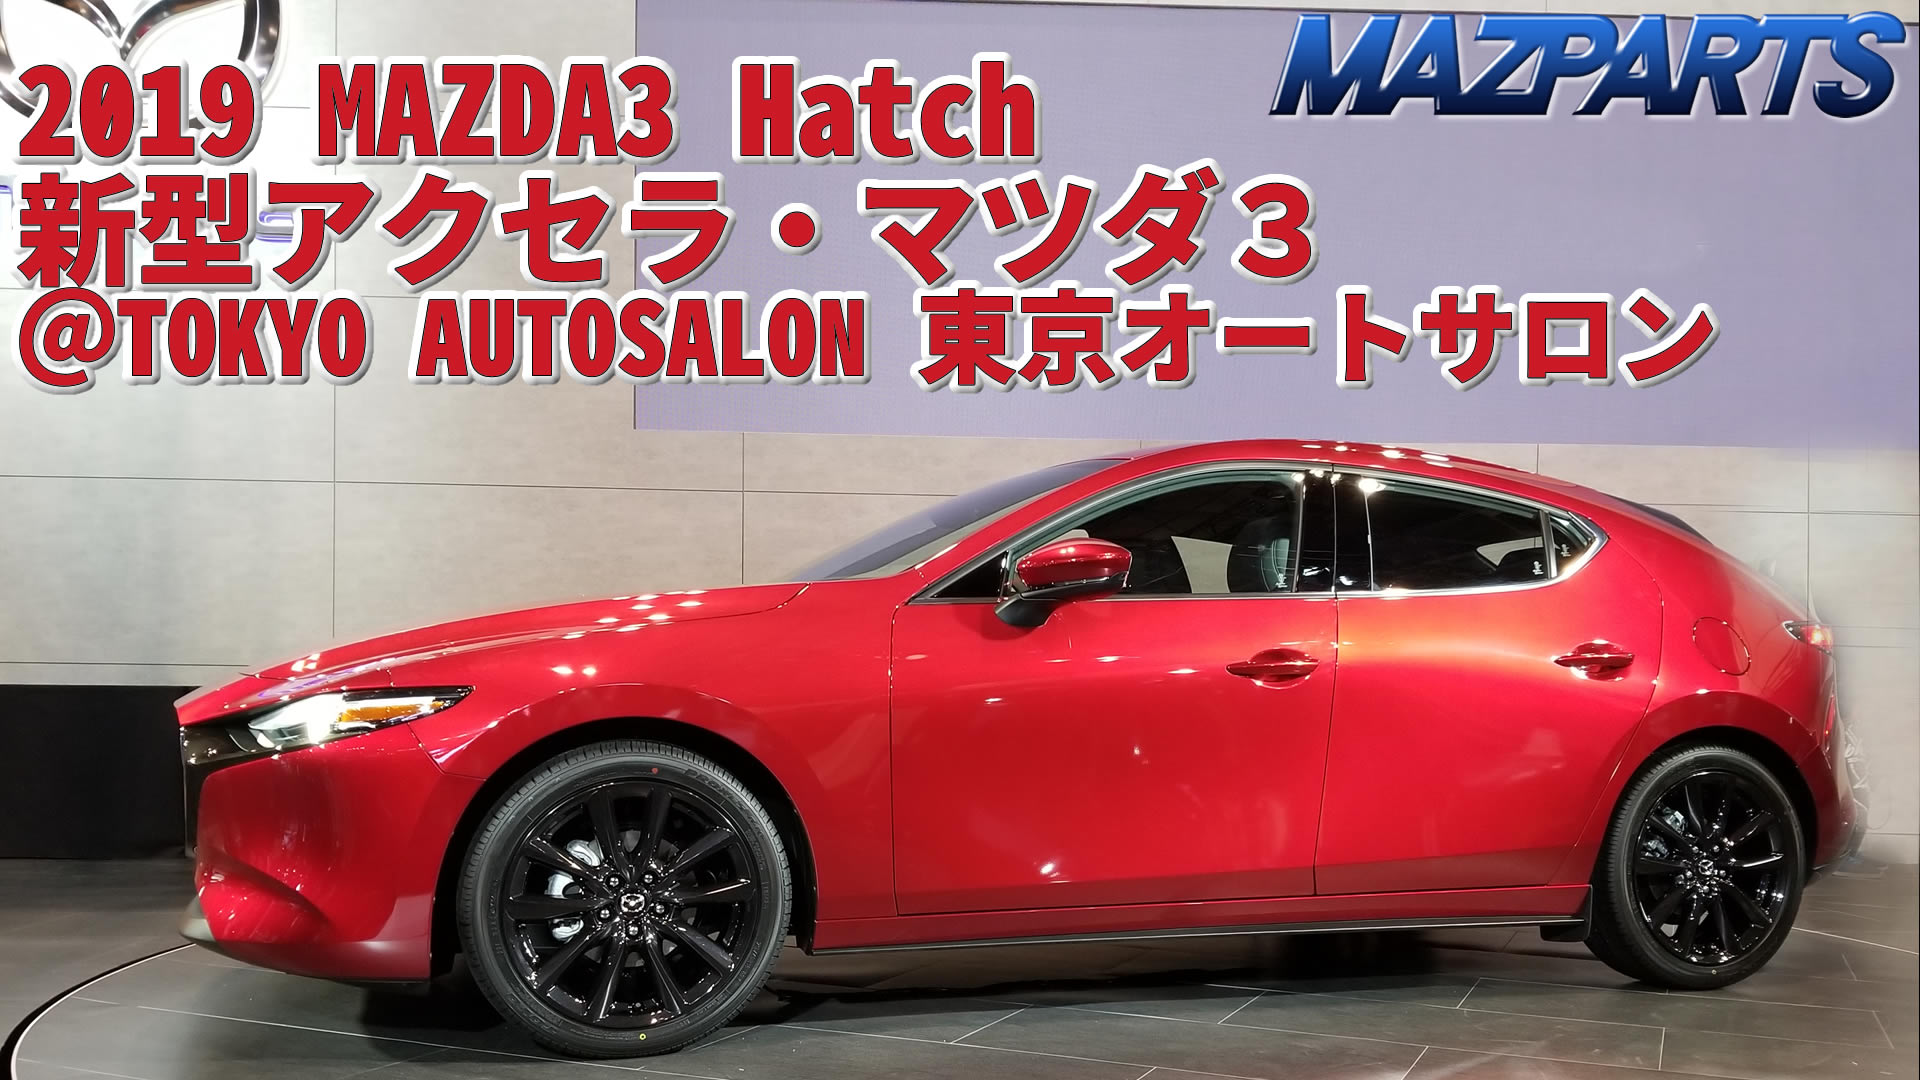 オートサロンで新型アクセラ・マツダ３／MAZDA3 Hatch 2019を見てきたよ（くるくる回るアクセラのHD動画あり）